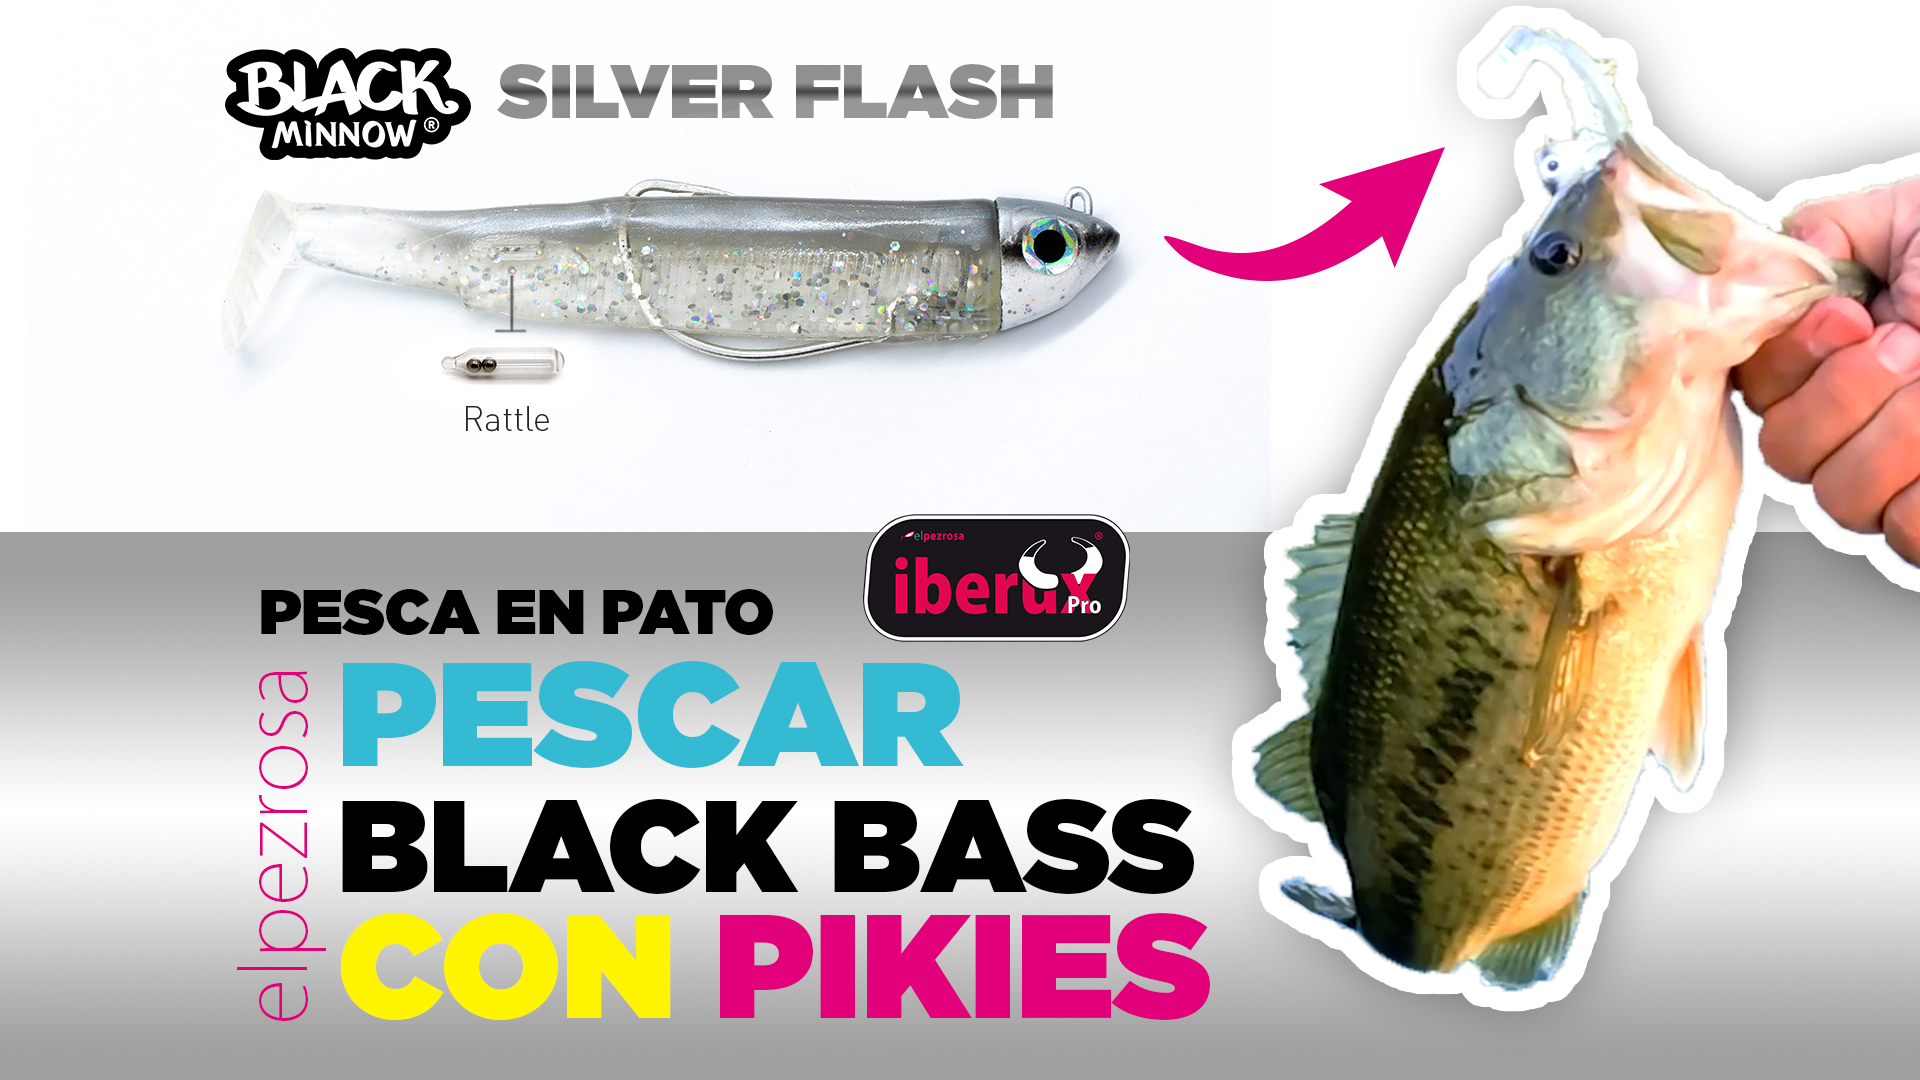 BLACK BASS| VIDEO Como pescar BLACK BASS desde pato con Black Minnow SILVER FLASH